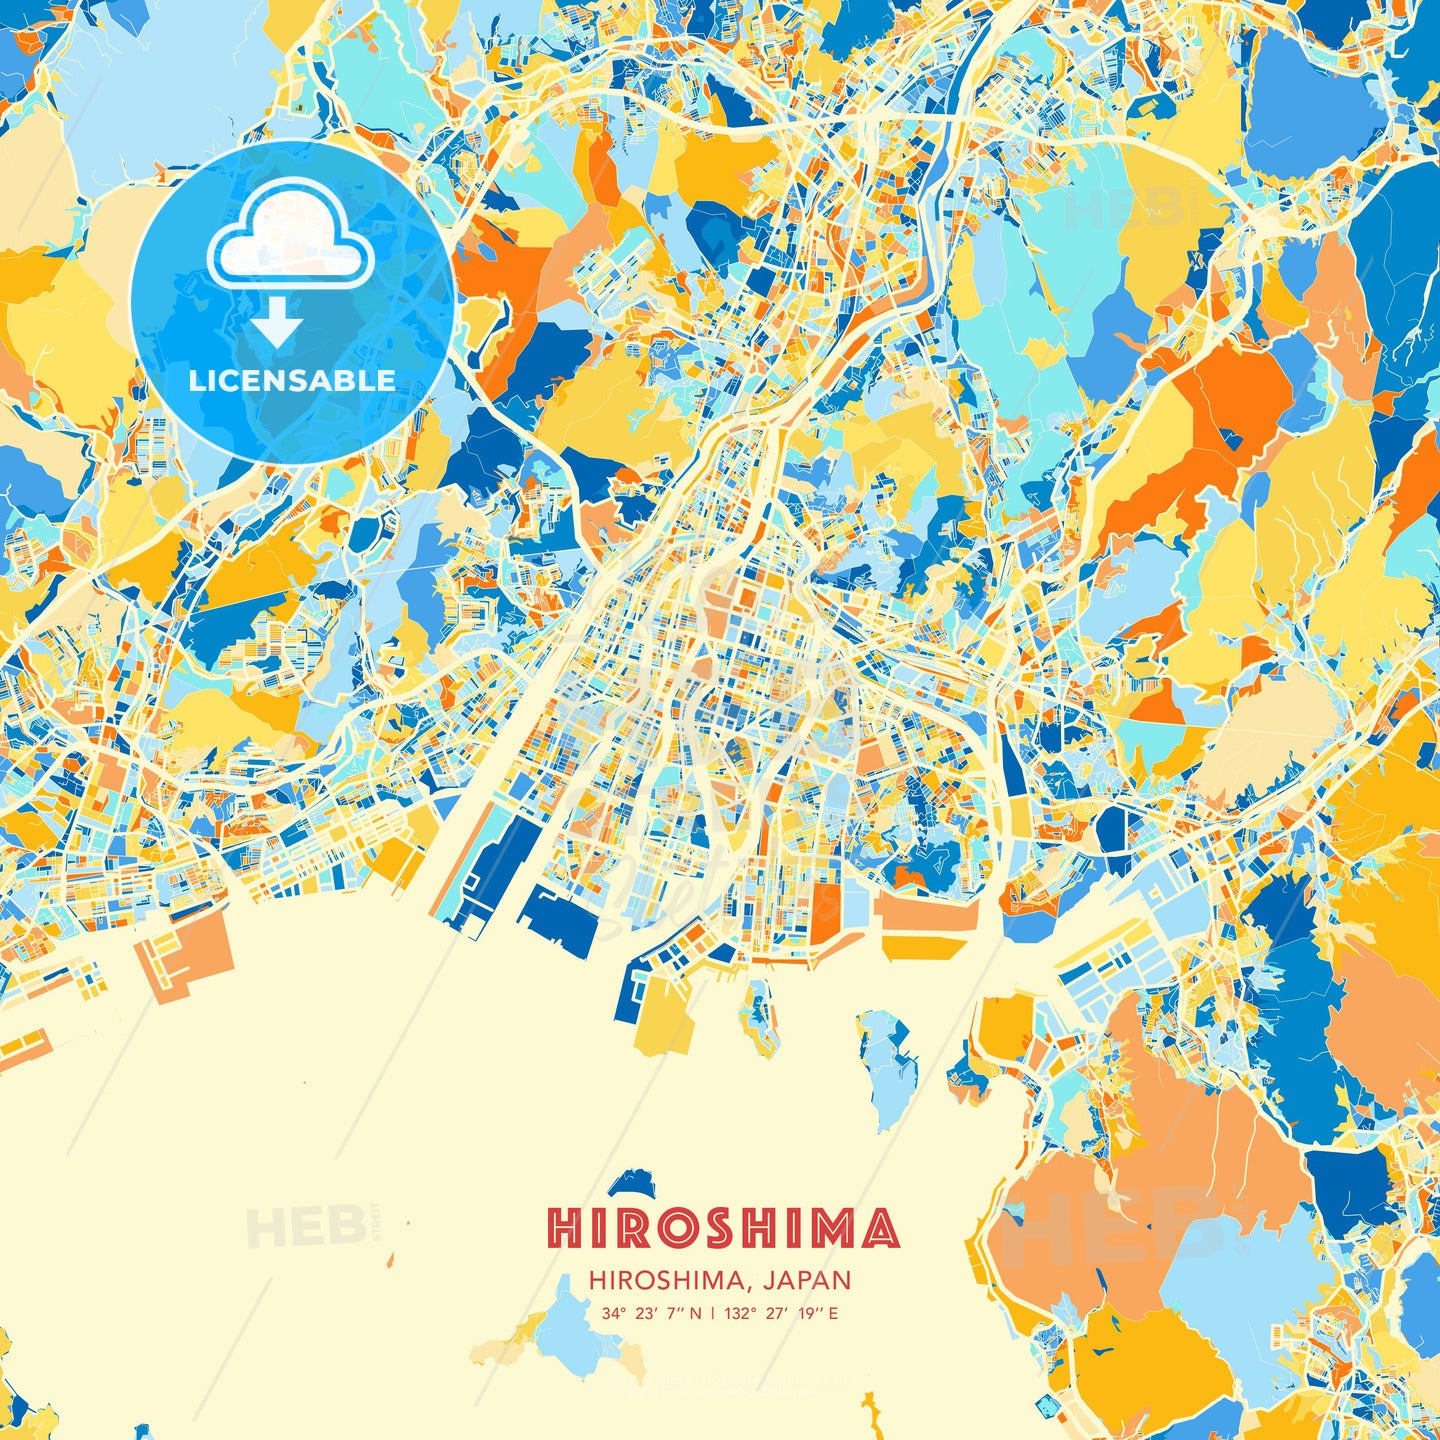 Hiroshima, Hiroshima, Japan, map - HEBSTREITS Sketches